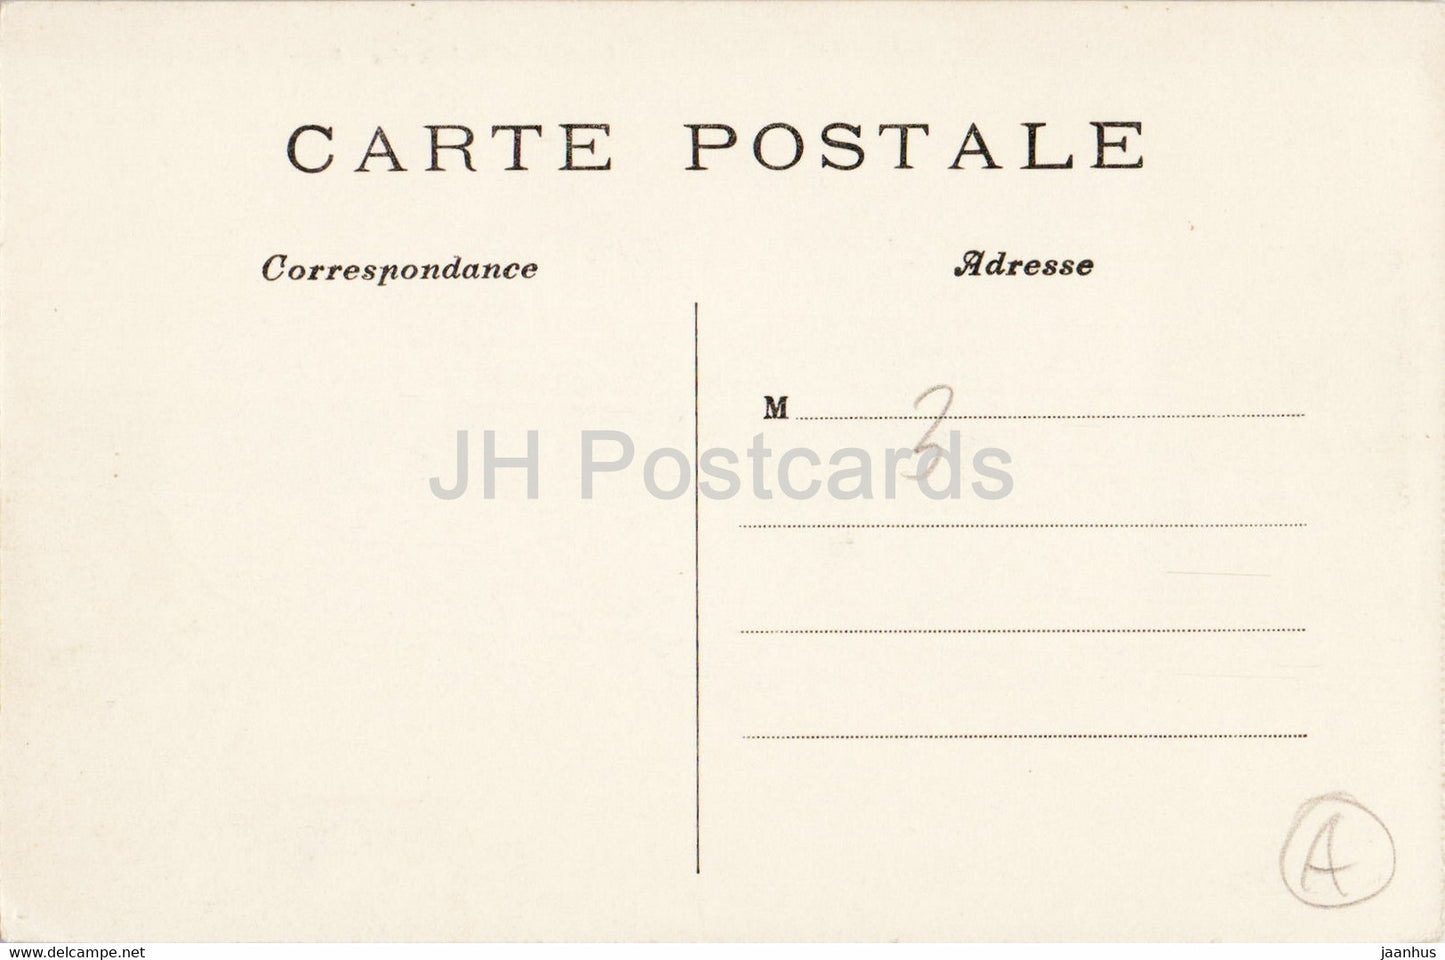 Paris - Le Grand Palais des Champs Elysees - 10 - alte Postkarte - Frankreich - unbenutzt